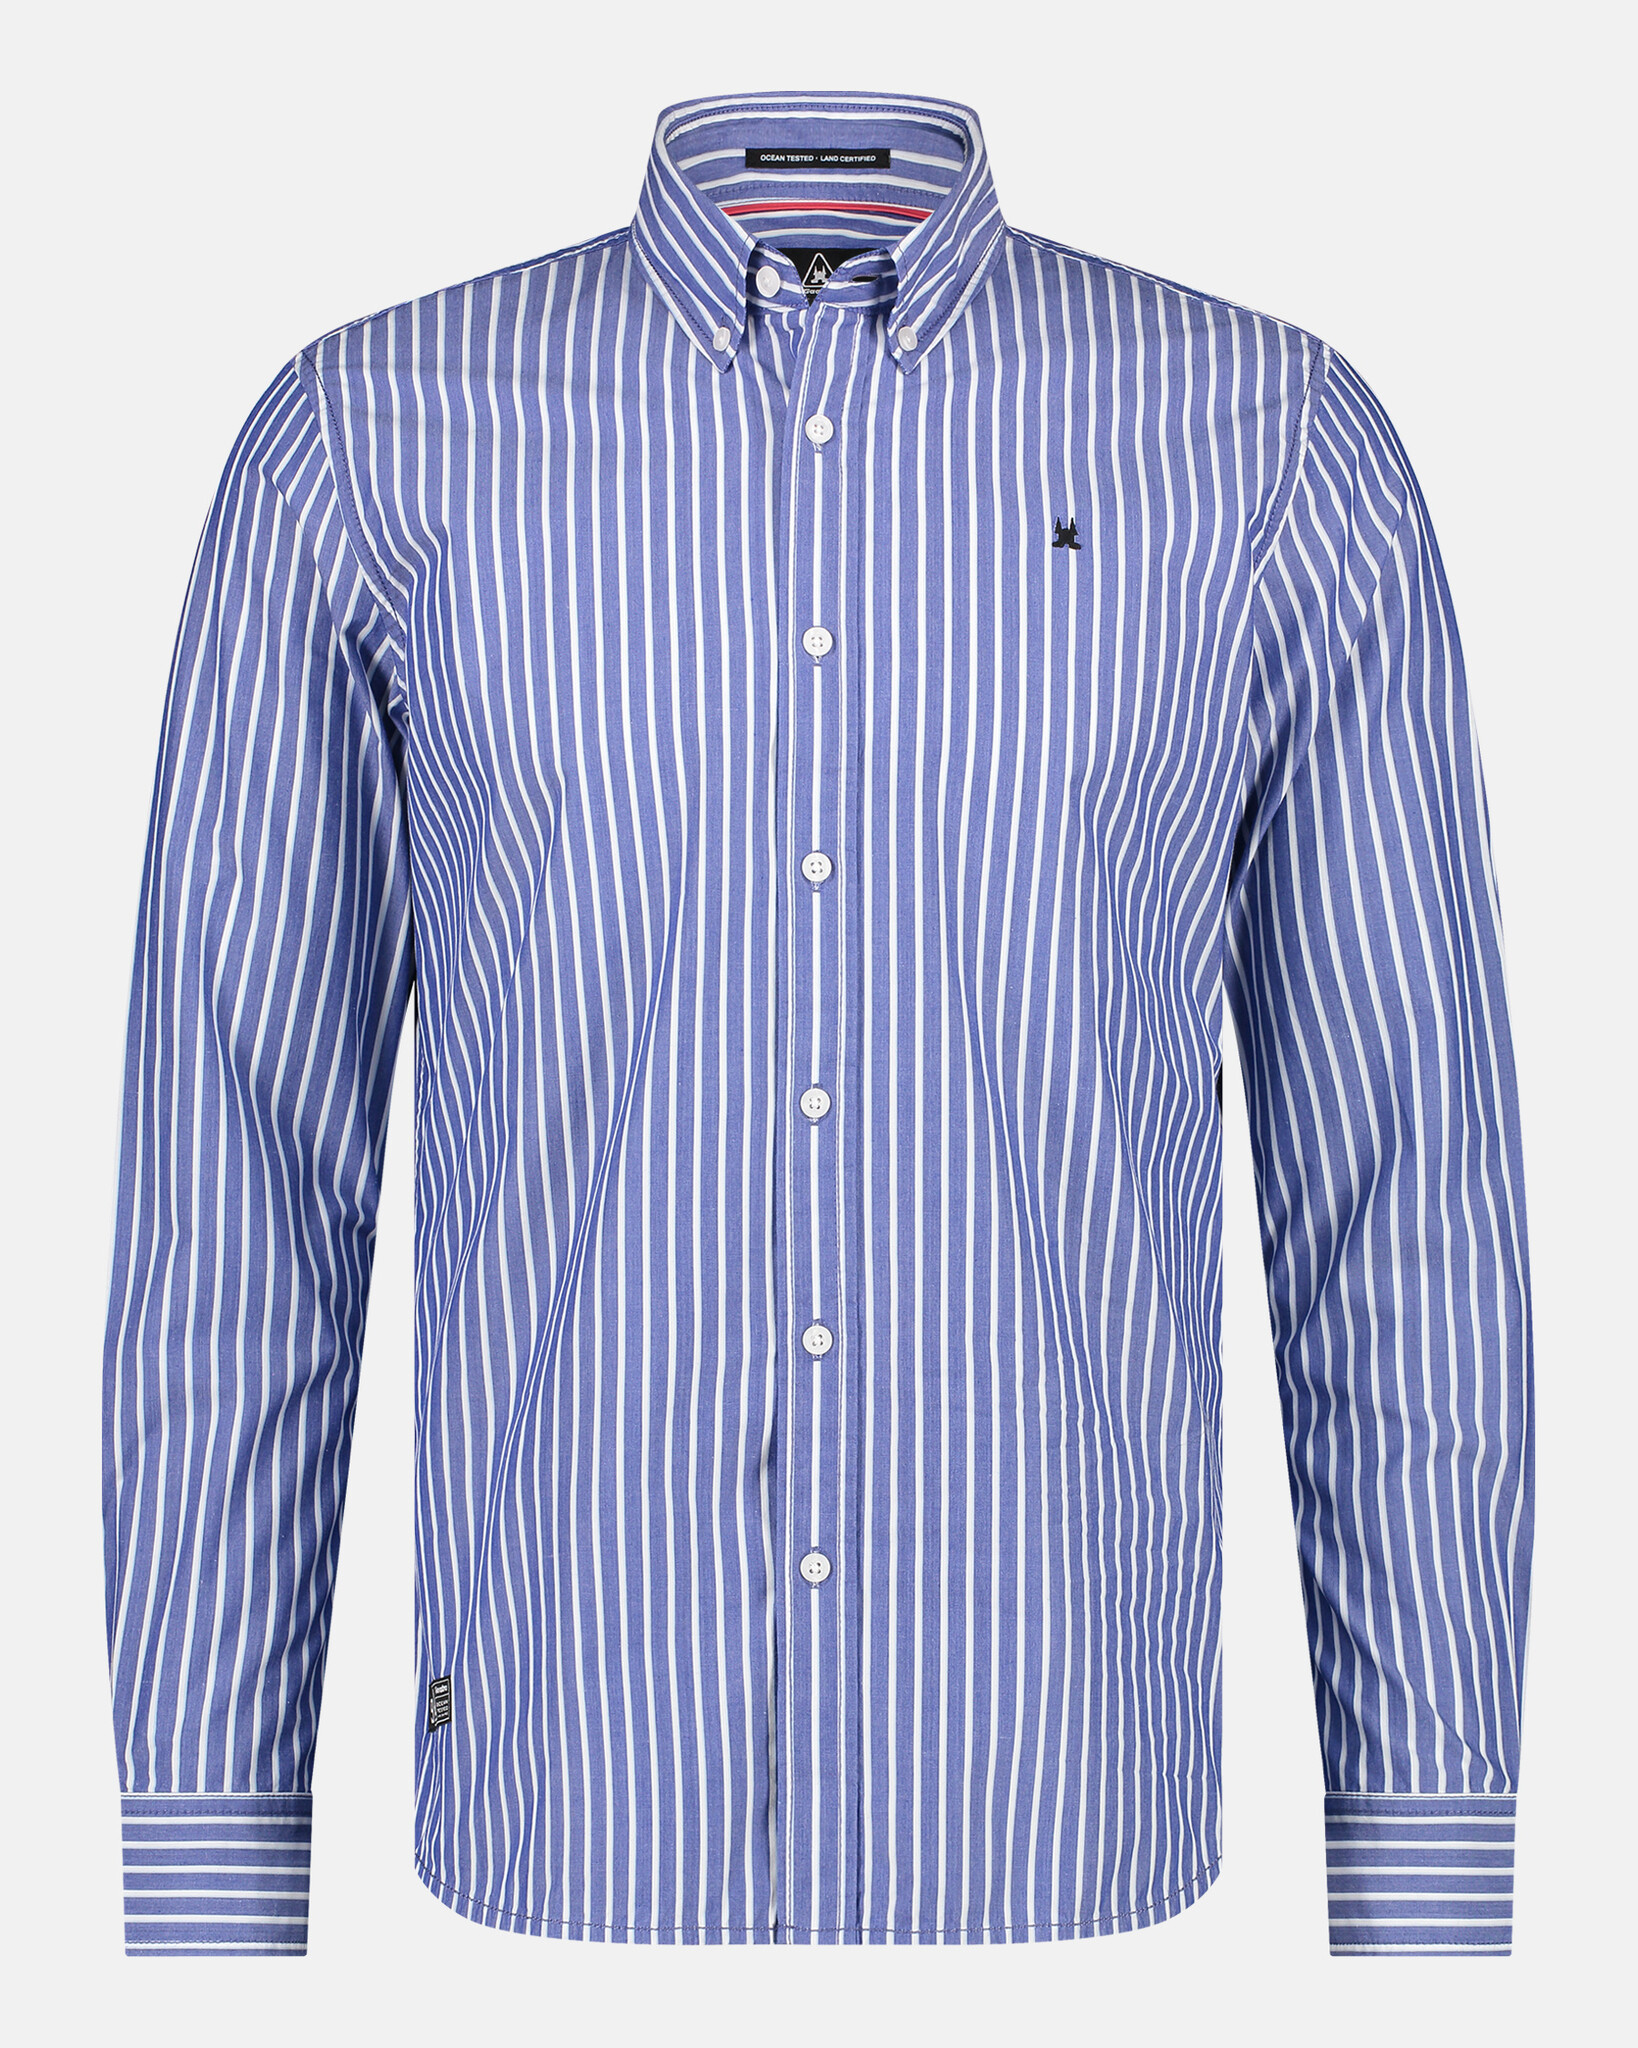 Chemise rayée coupe classique avec col boutonné et logo brodé ton sur ton